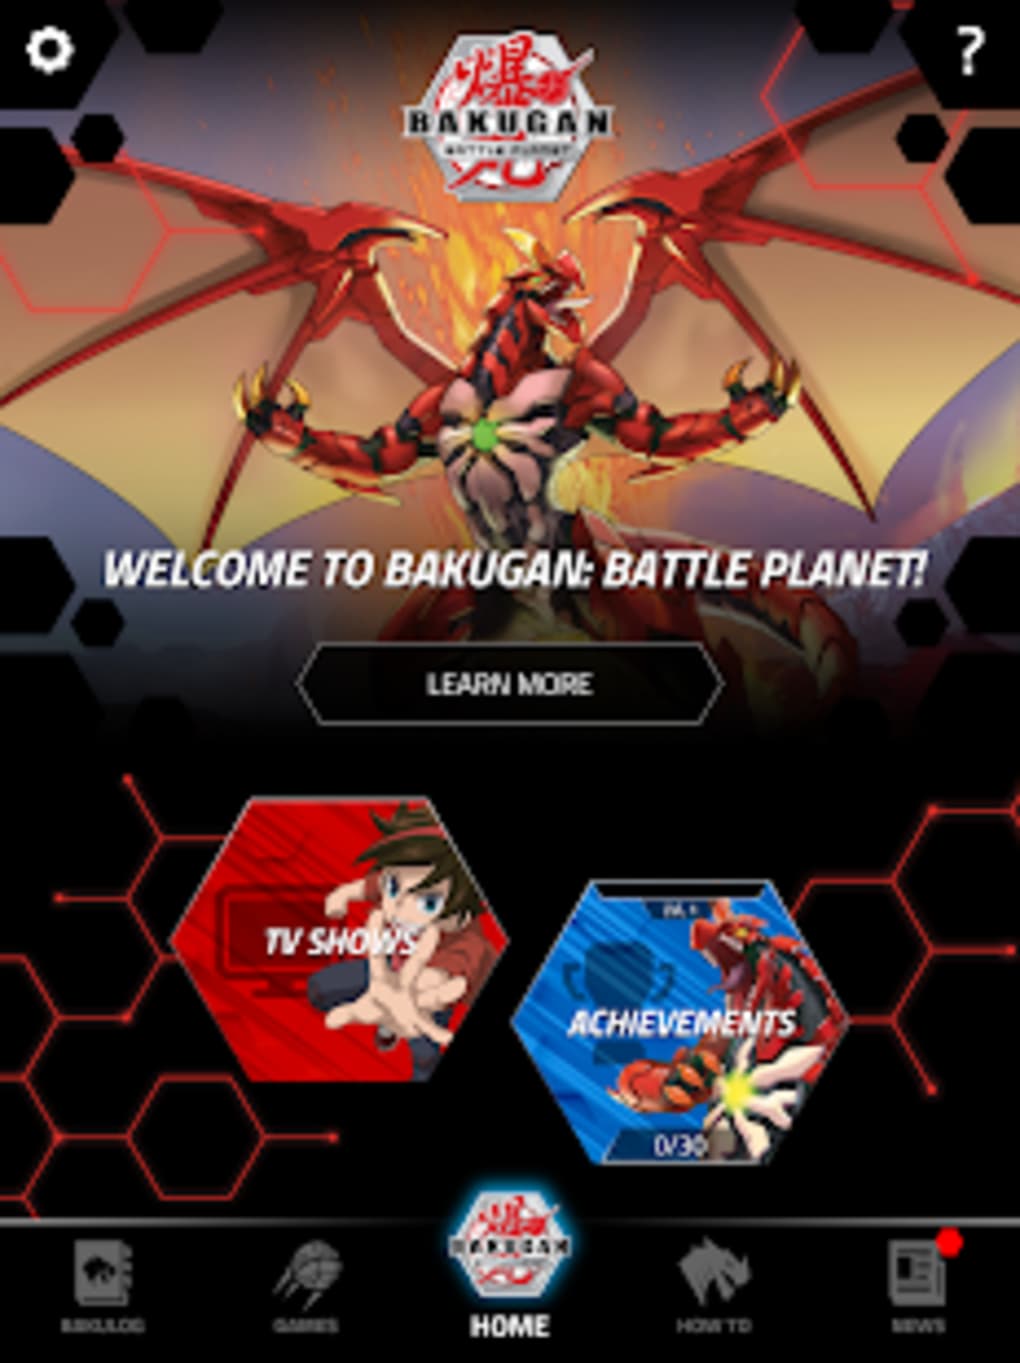 Bakugan Fan Hub - Apps on Google Play